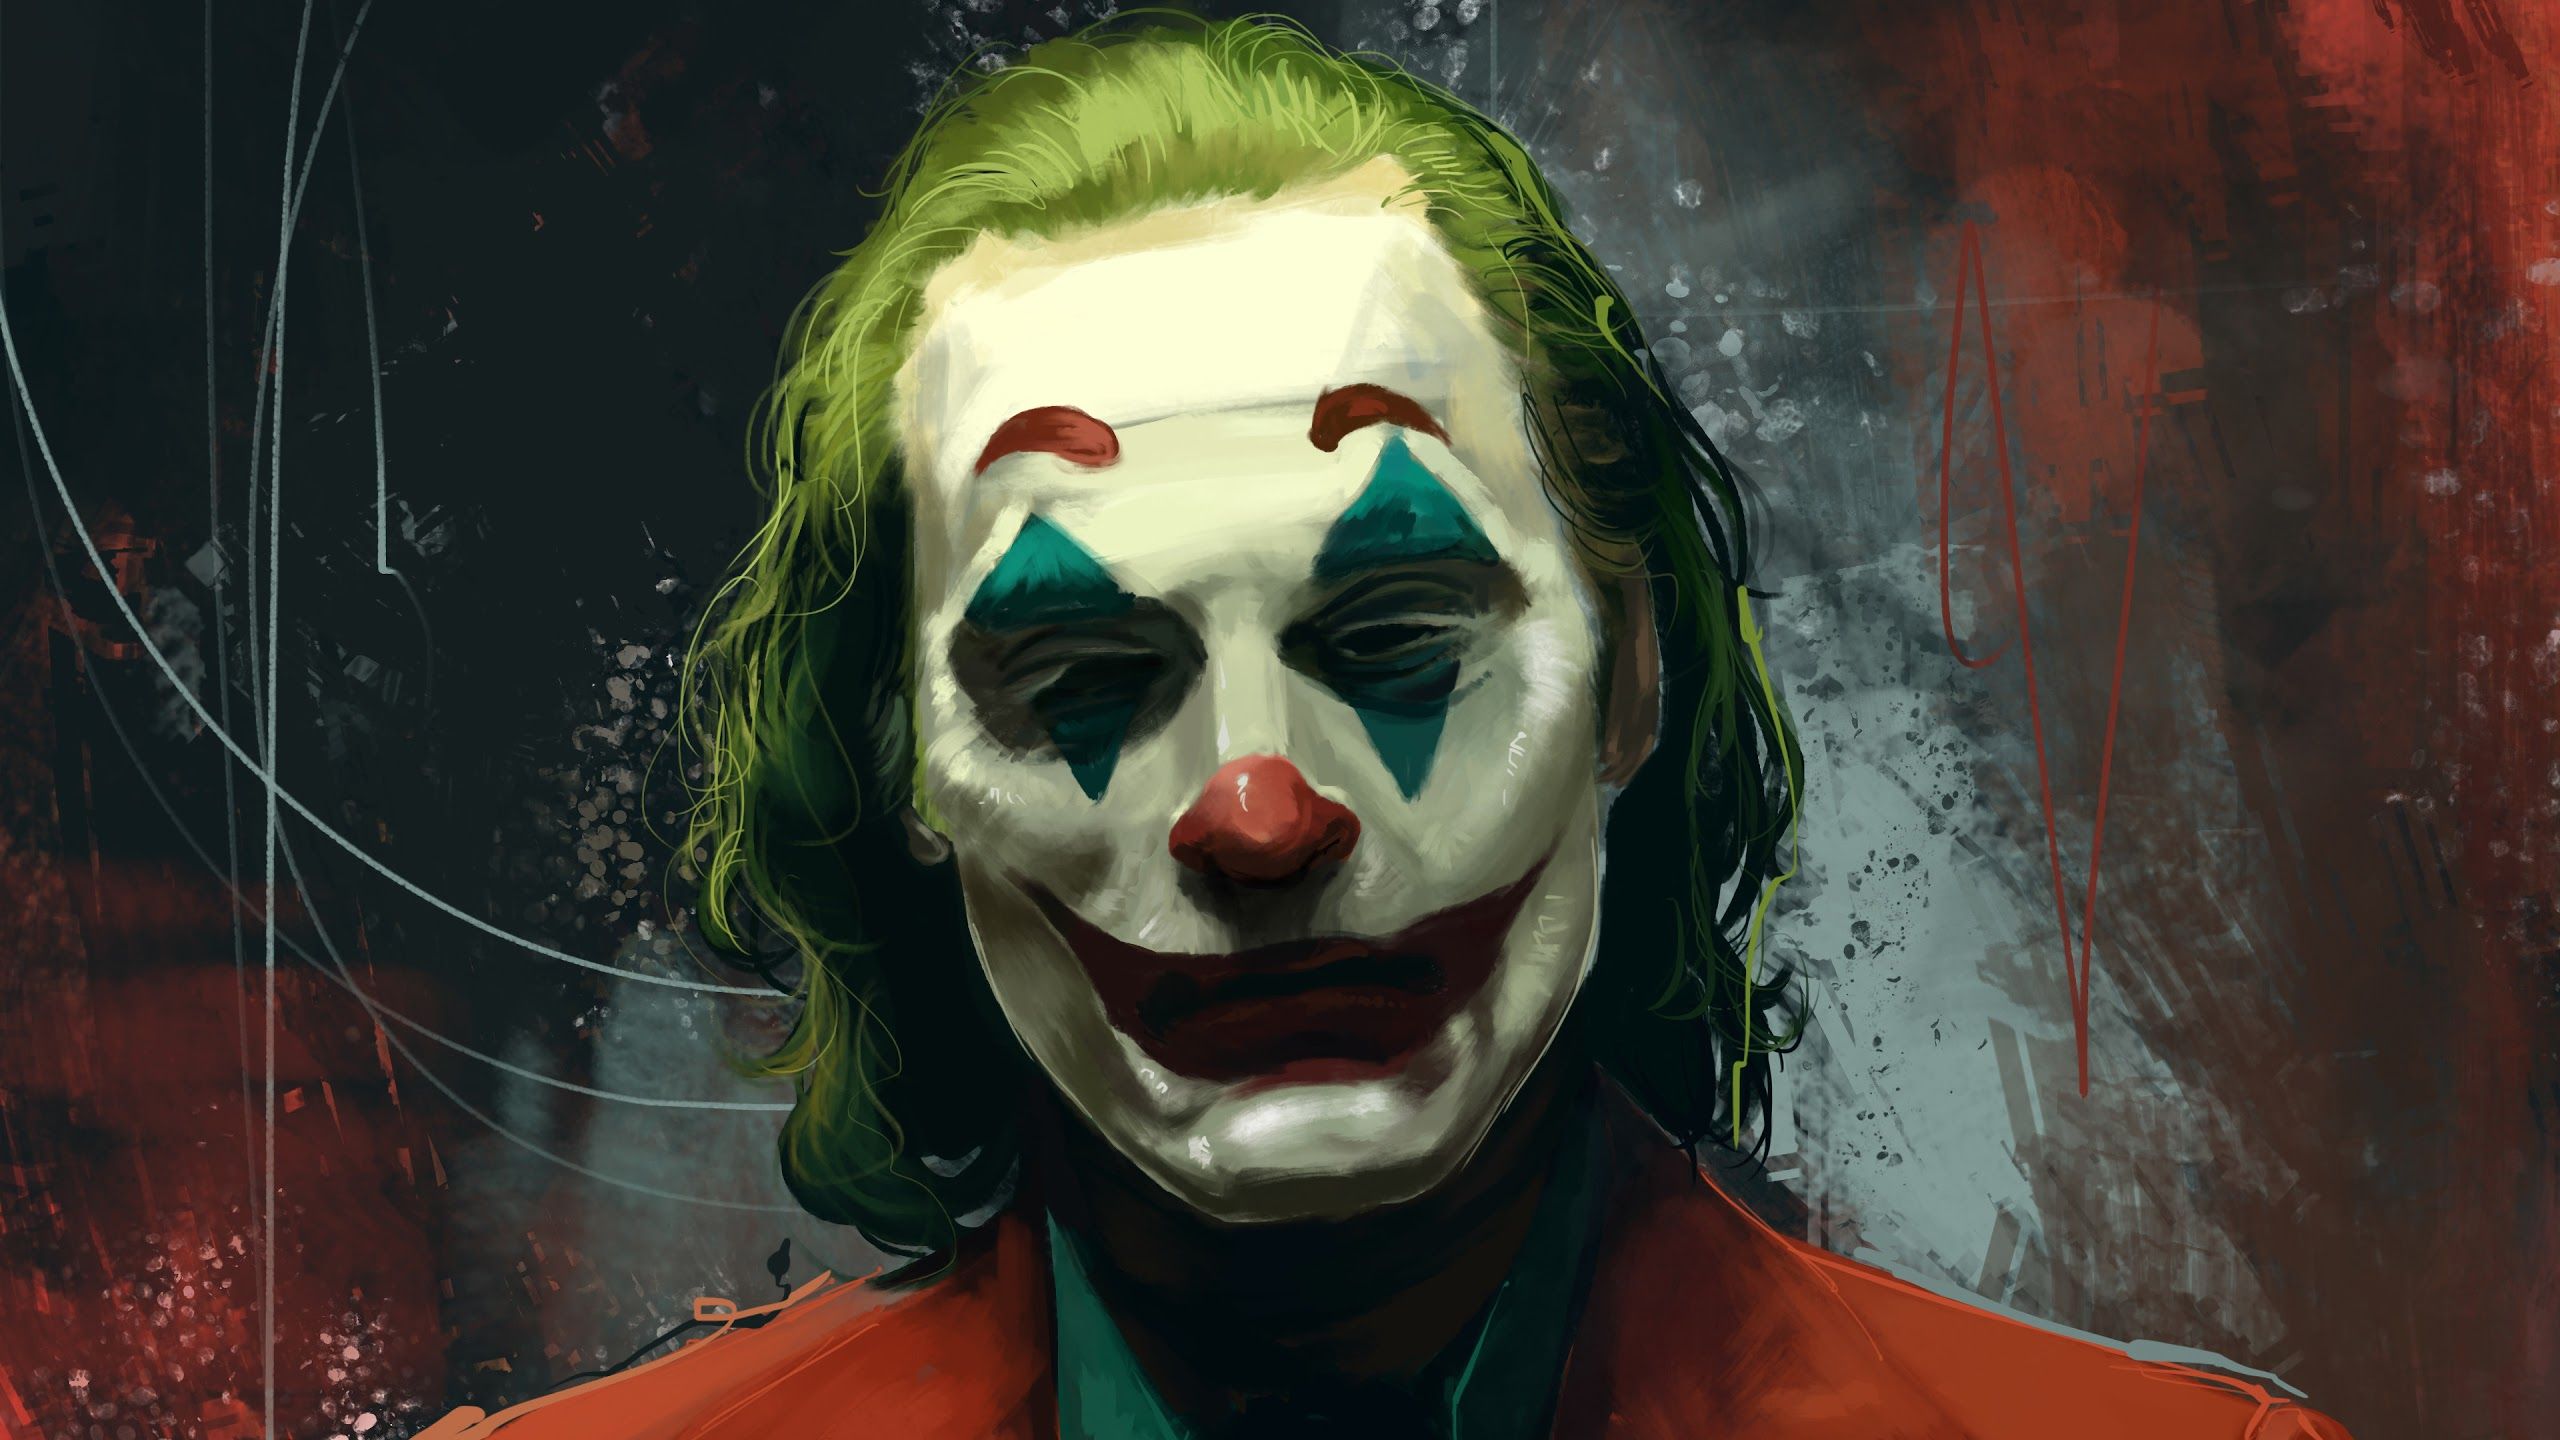 Pin on Joker 2019 Movie